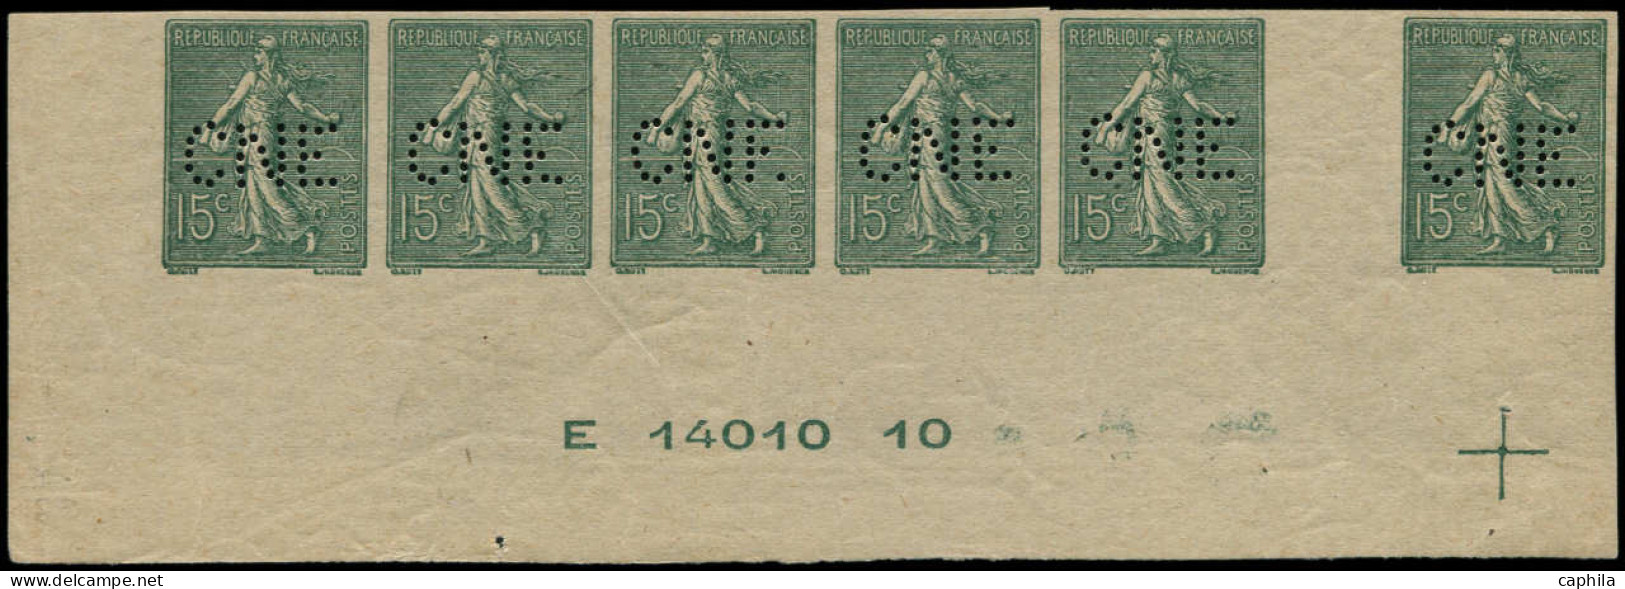 ** FRANCE - Poste - 130g, Bande De 6 Non Dentelée, Avec N° De Feuille, Perforés "CNE" (Comptoir National D'Epargne) - Unused Stamps